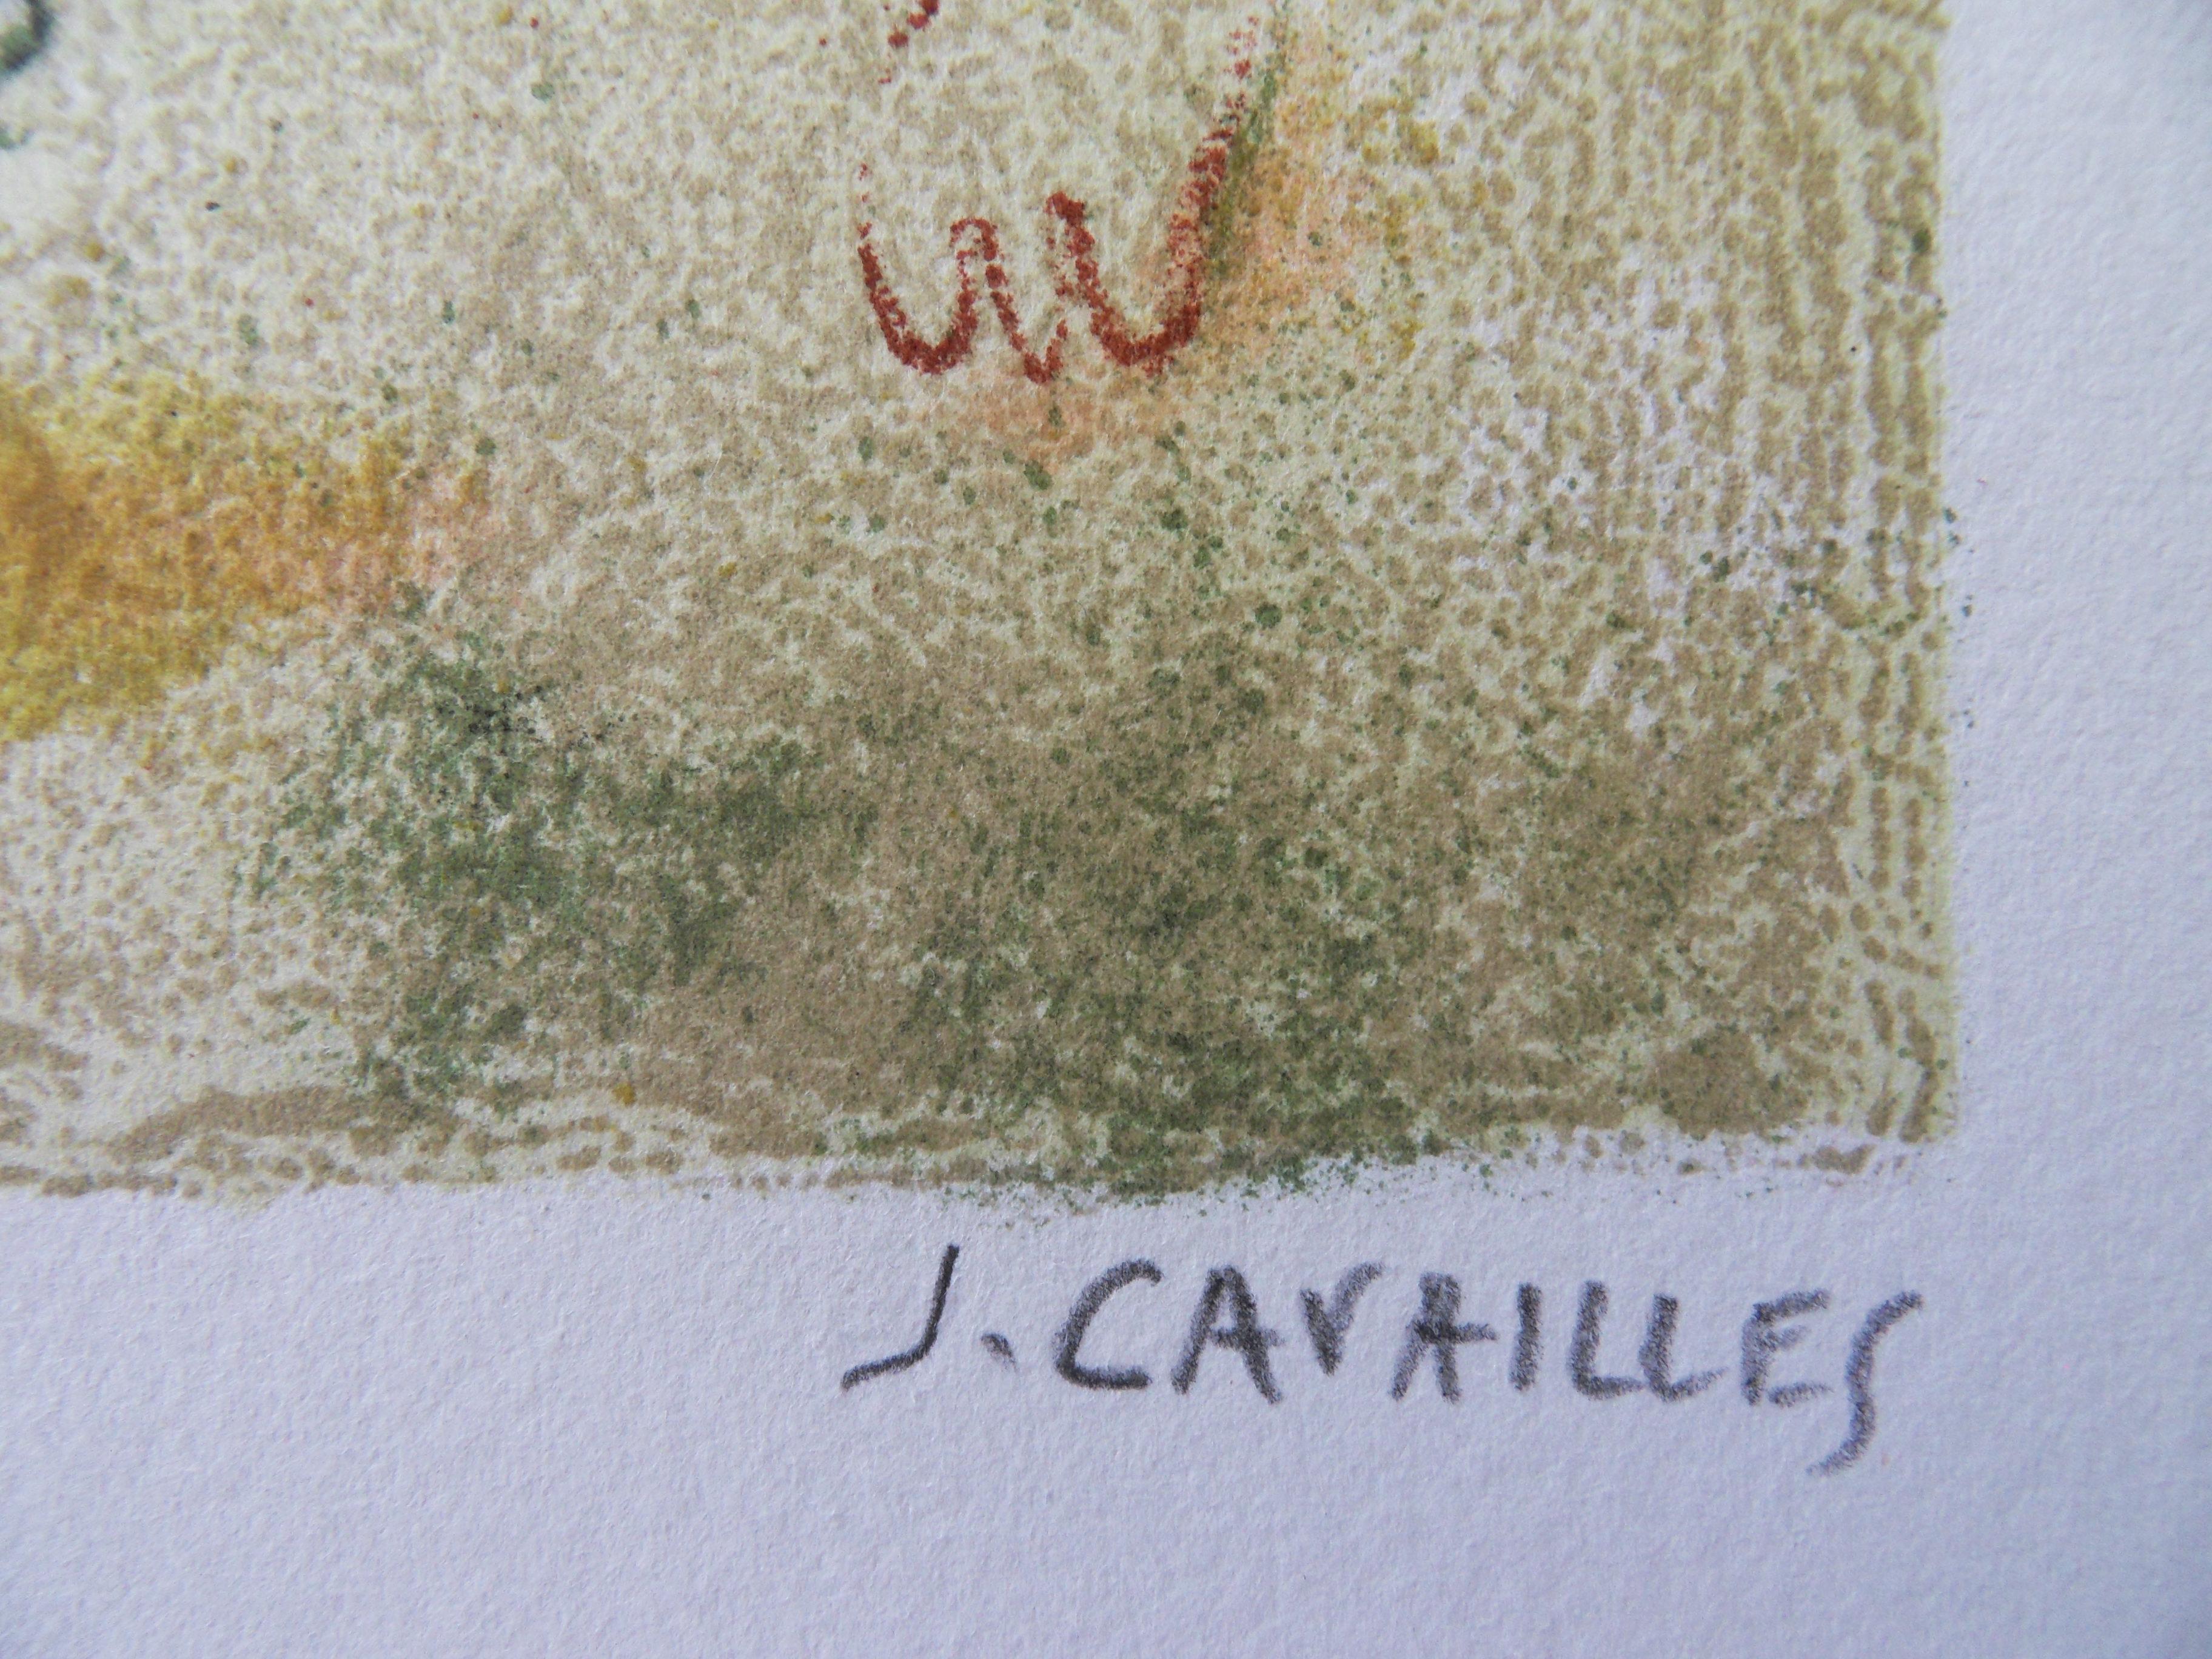 Jules CAVAILLES
Rupestral Malerei

Original-Lithographie
Handsigniert mit Bleistift
Begründetes EA (Künstlerischer Nachweis)
Auf Arches Pergament 36 x 20 cm (ca. 14 x 8 Zoll)

Ausgezeichneter Zustand